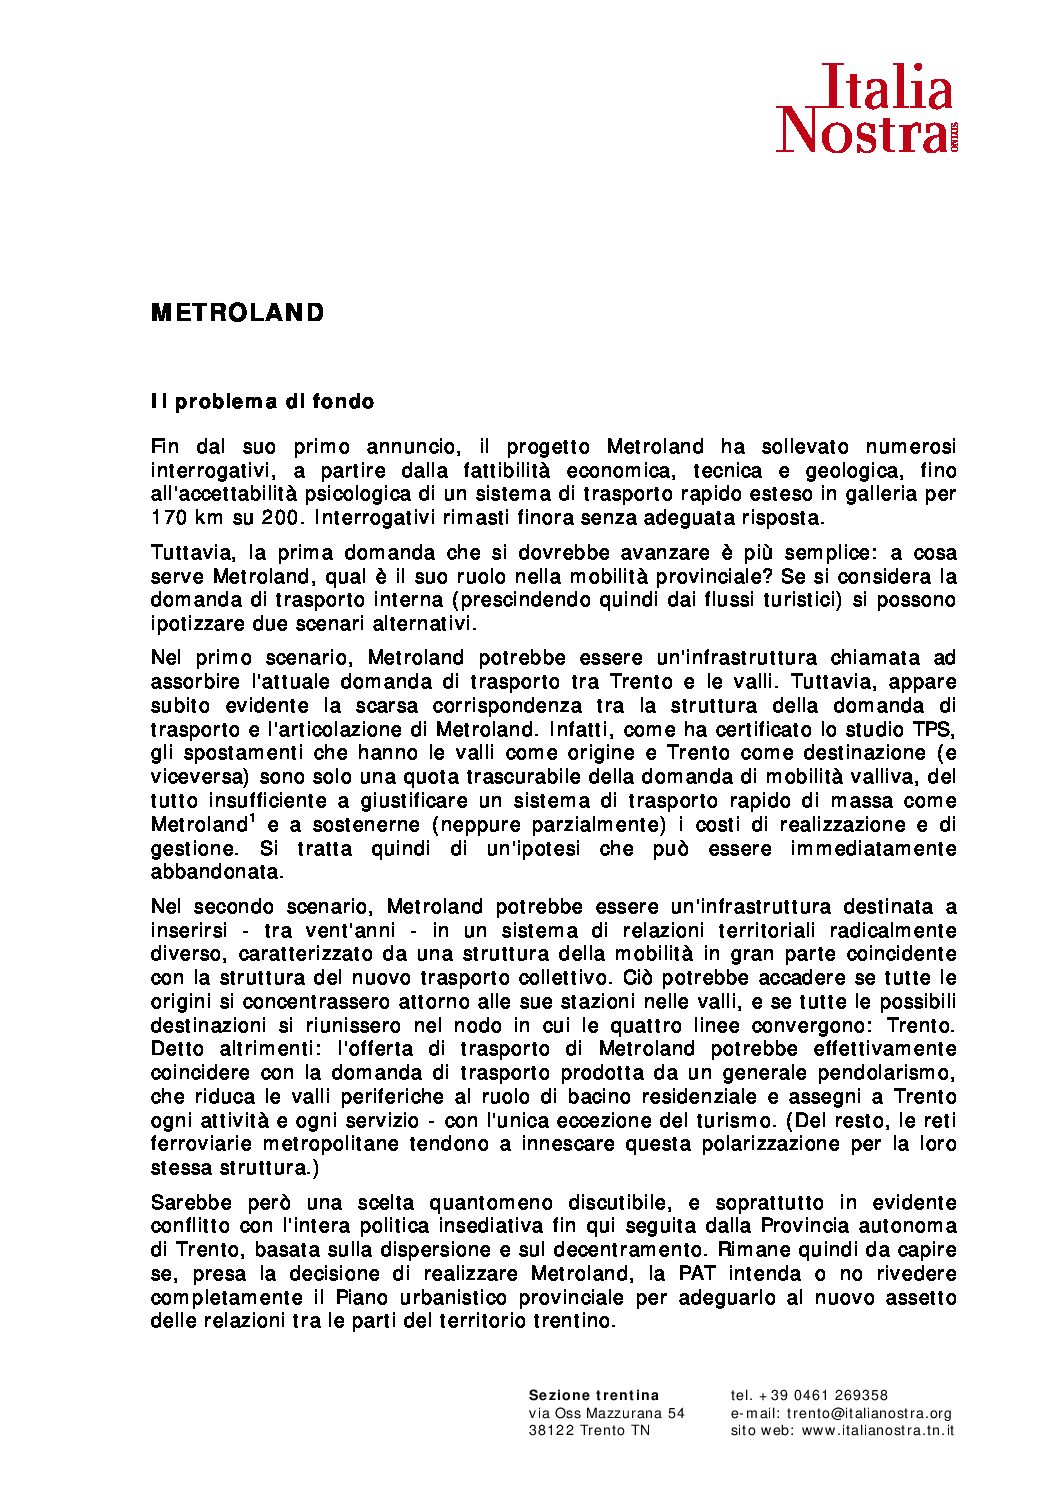 Metroland – La posizione di Italia Nostra